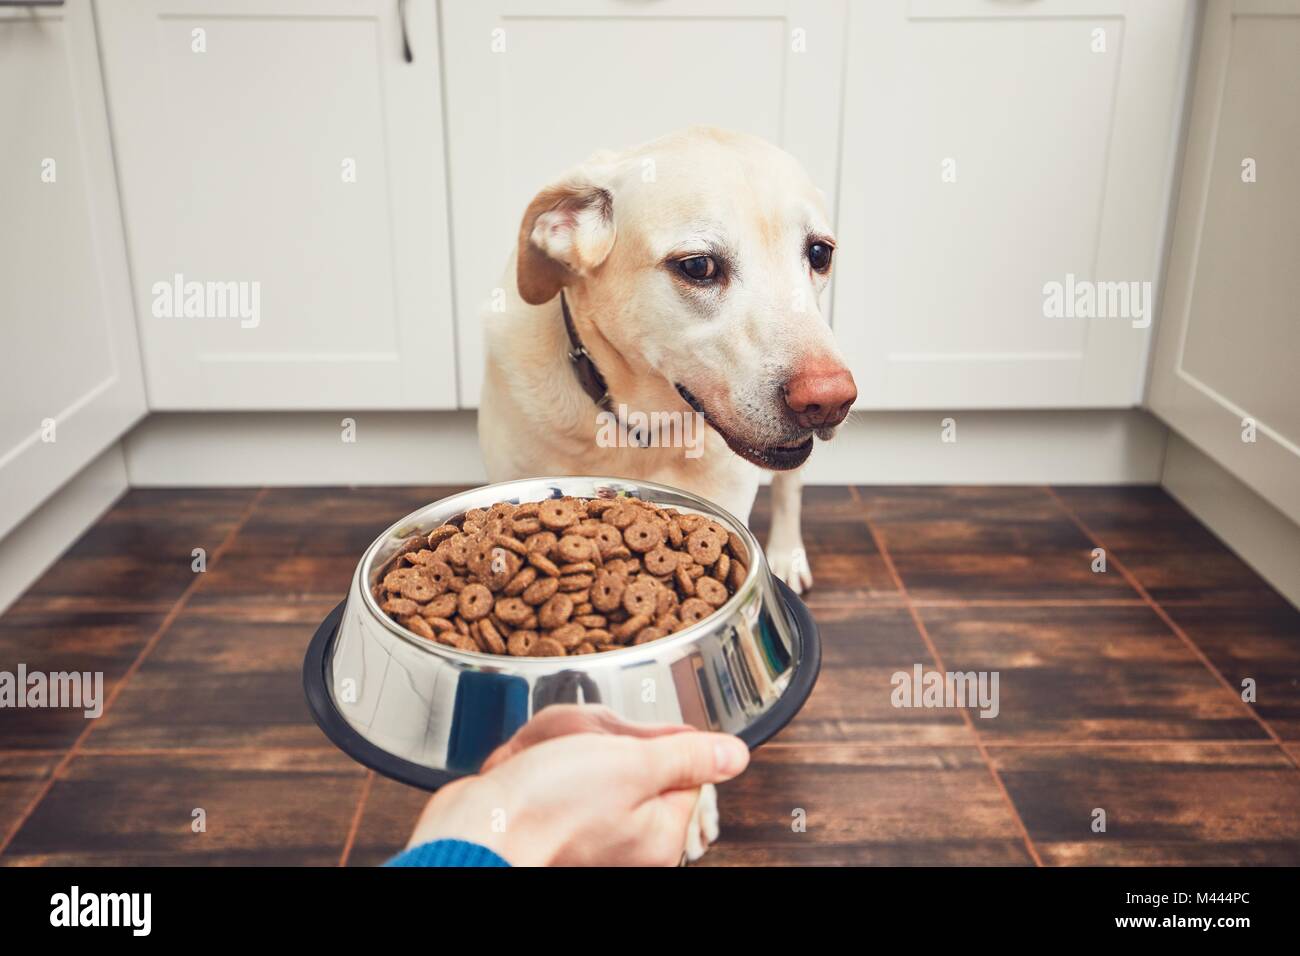 Das häusliche Leben mit Haustier. Fütterung hungrig Labrador Retriever. Der Eigentümer gibt seinem Hund eine Schüssel mit Granulat. Stockfoto